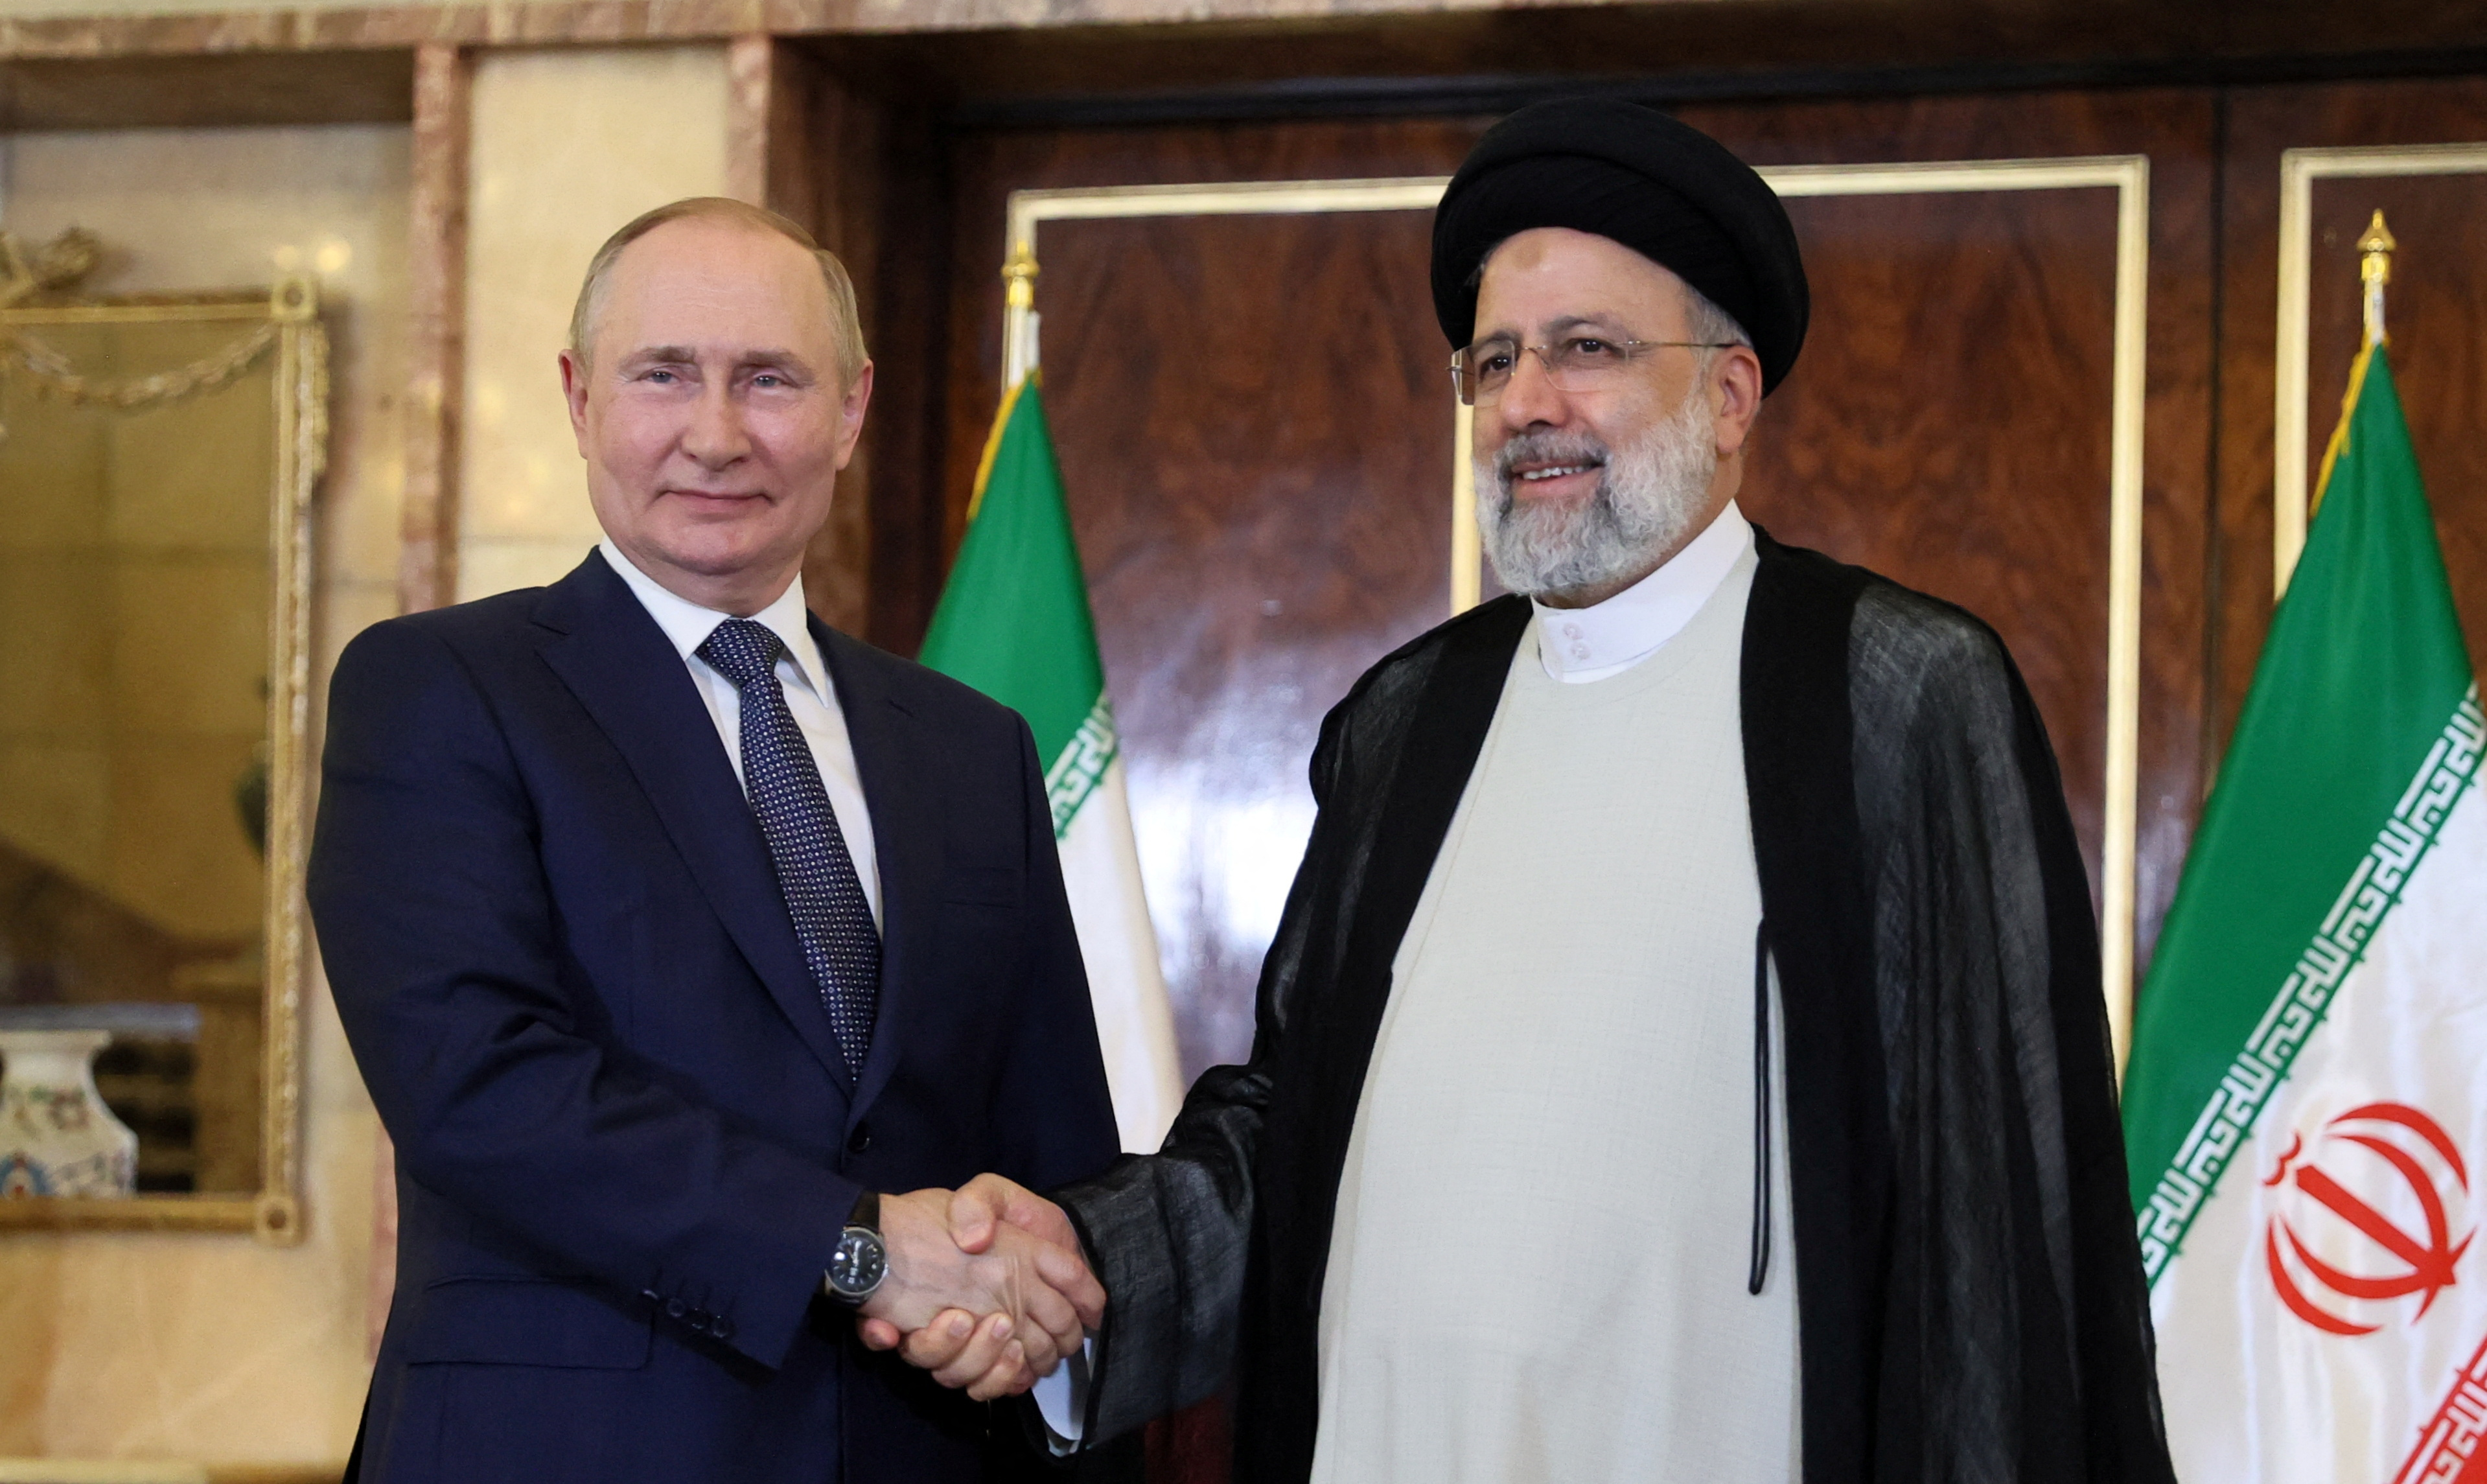 El presidente ruso, Vladímir Putin, estrecha la mano del presidente iraní, Ebrahim Raisi, durante una reunión en Teherán, Irán, el 19 de julio de 2022 (Reuters)